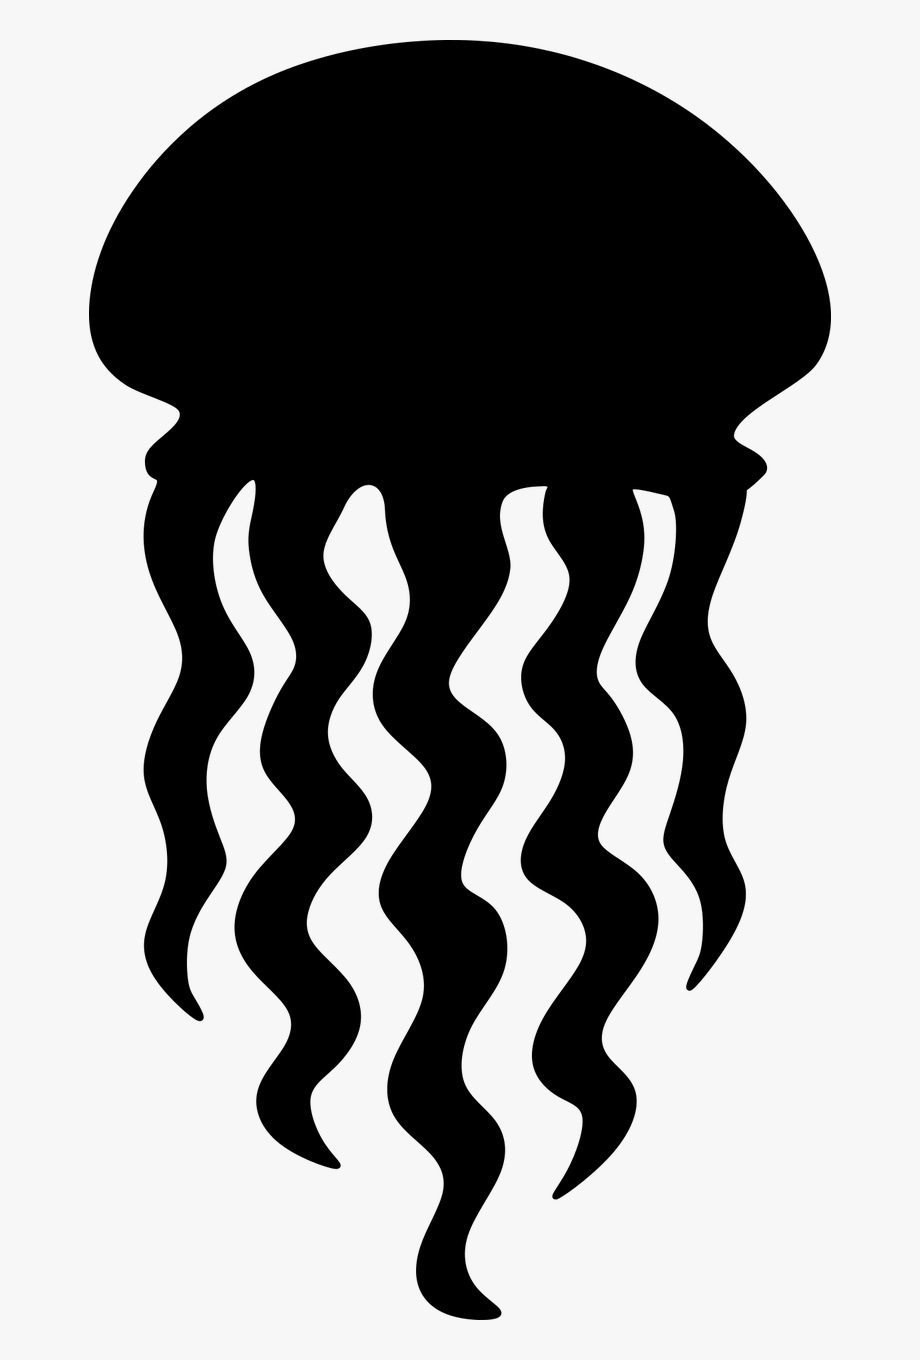 Jellyfish cutout 2204923.